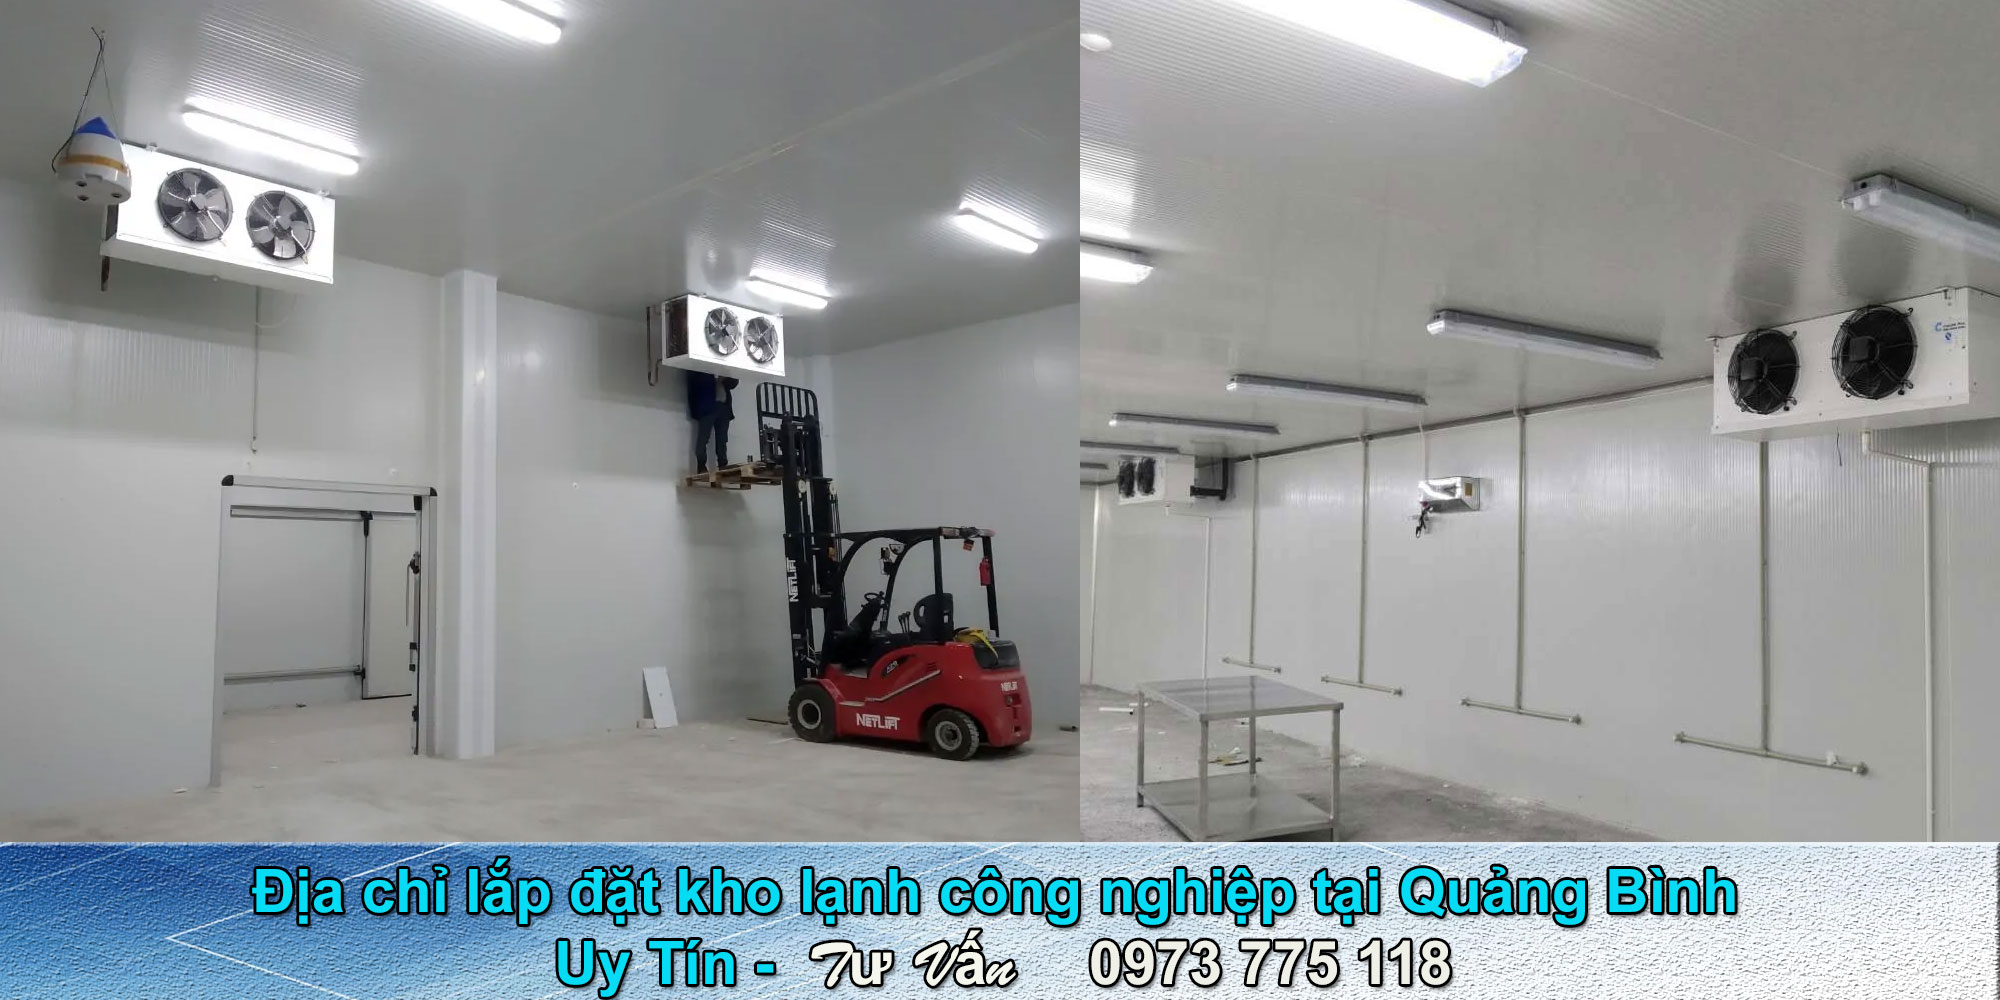 Địa chỉ lắp đặt kho lạnh công nghiệp tại Quảng Bình Uy Tín